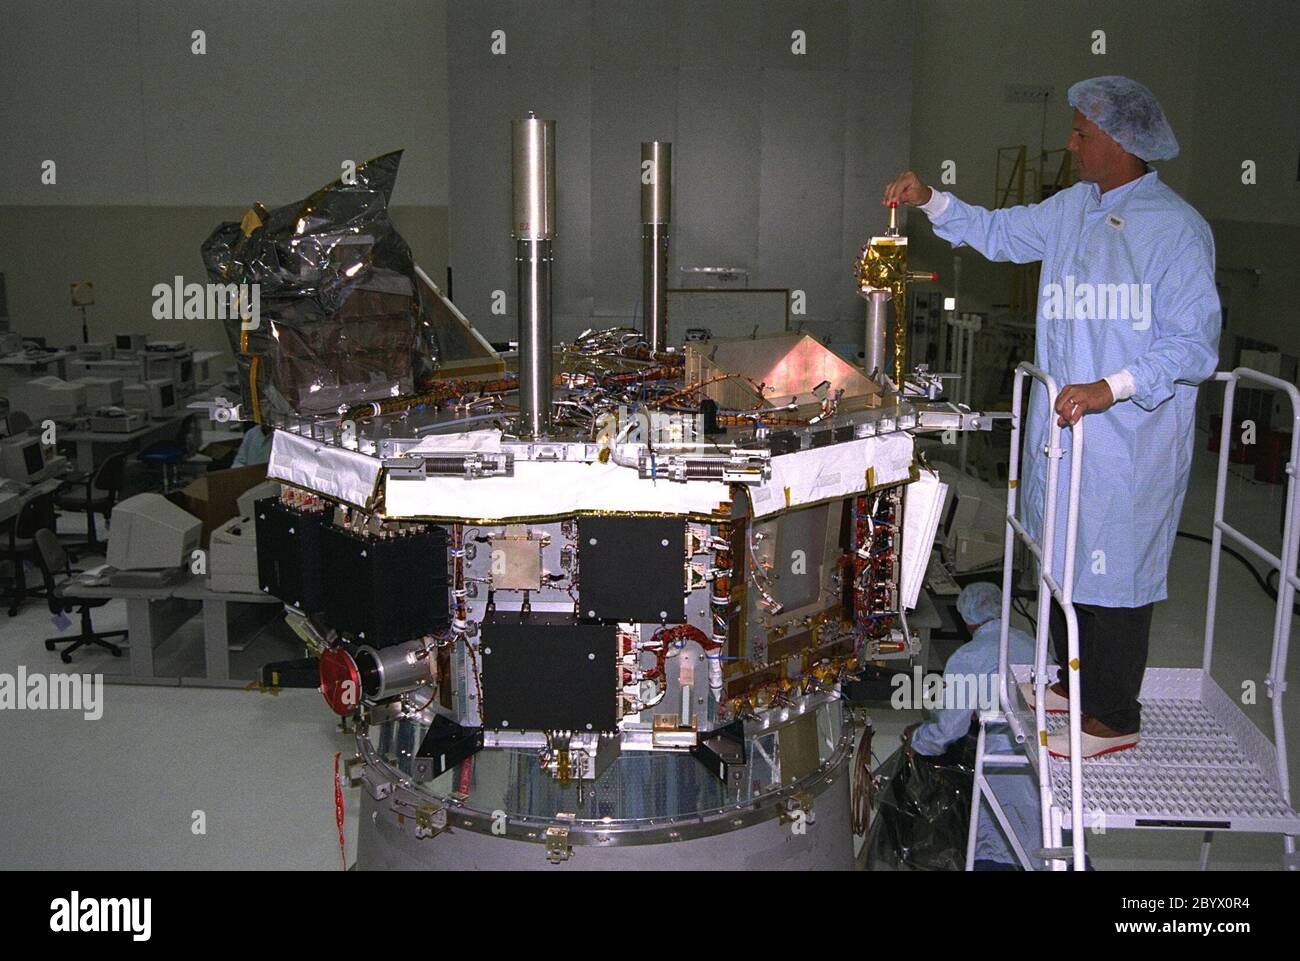 Les travailleurs de l'installation d'assemblage et d'encapsulation des engins spatiaux 2 (SAEF-2) commencent le traitement avant lancement de l'explorateur de composition avancé (ACE) qui étudiera l'origine et l'évolution du phénomène solaire, la formation de la couronne solaire, les éruptions solaires et l'accélération du vent solaire. ACE a été construit pour la NASA par le laboratoire de physique appliquée Johns Hopkins. Le lancement de l'engin spatial est prévu pour le 21 août à bord d'une fusée Delta II 7920-8 à deux étages du complexe de lancement spatial 17, Pad A. Banque D'Images